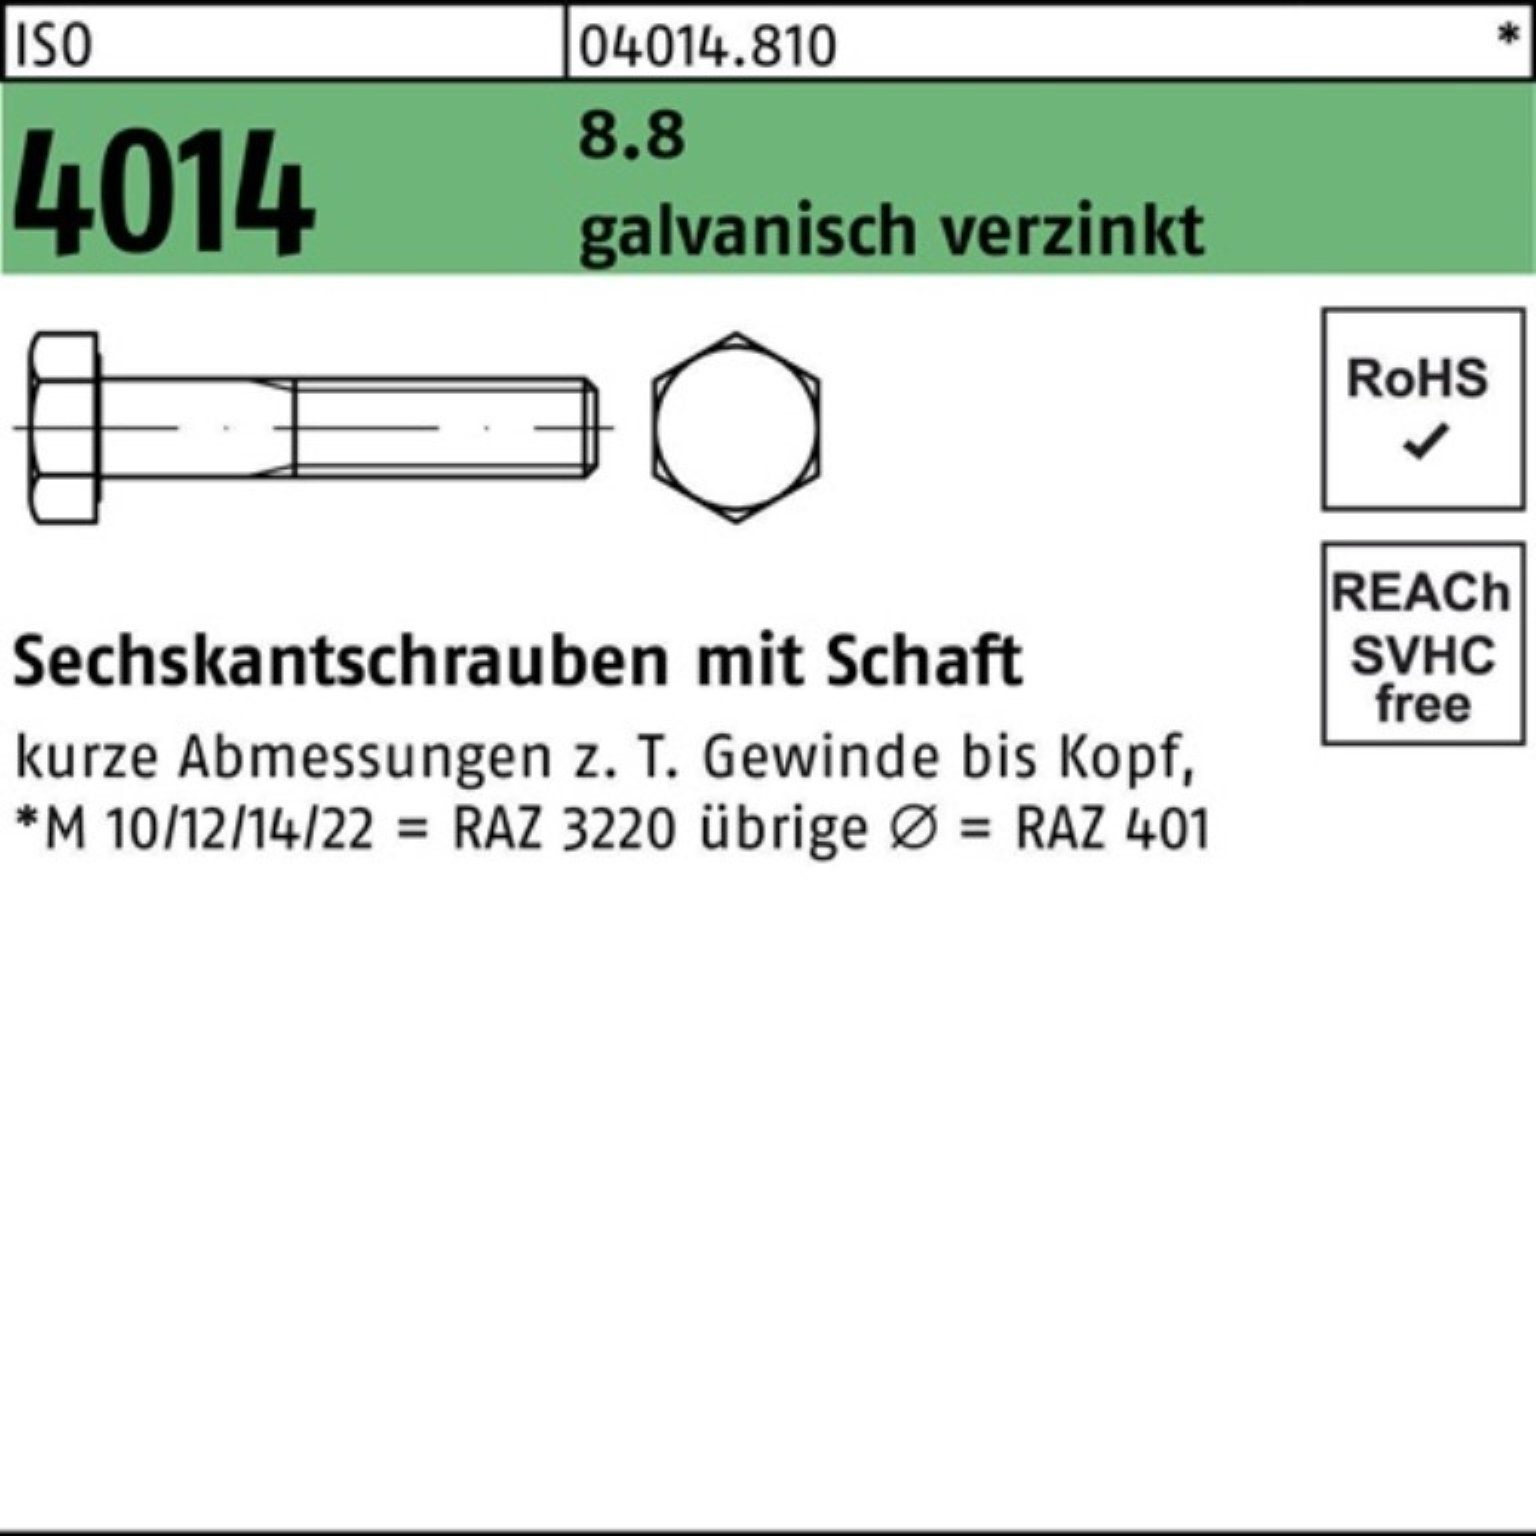 Pack Sechskantschraube Sechskantschraube 4014 145 Bufab 8.8 galv.verz. M8x 10 ISO Schaft 100er